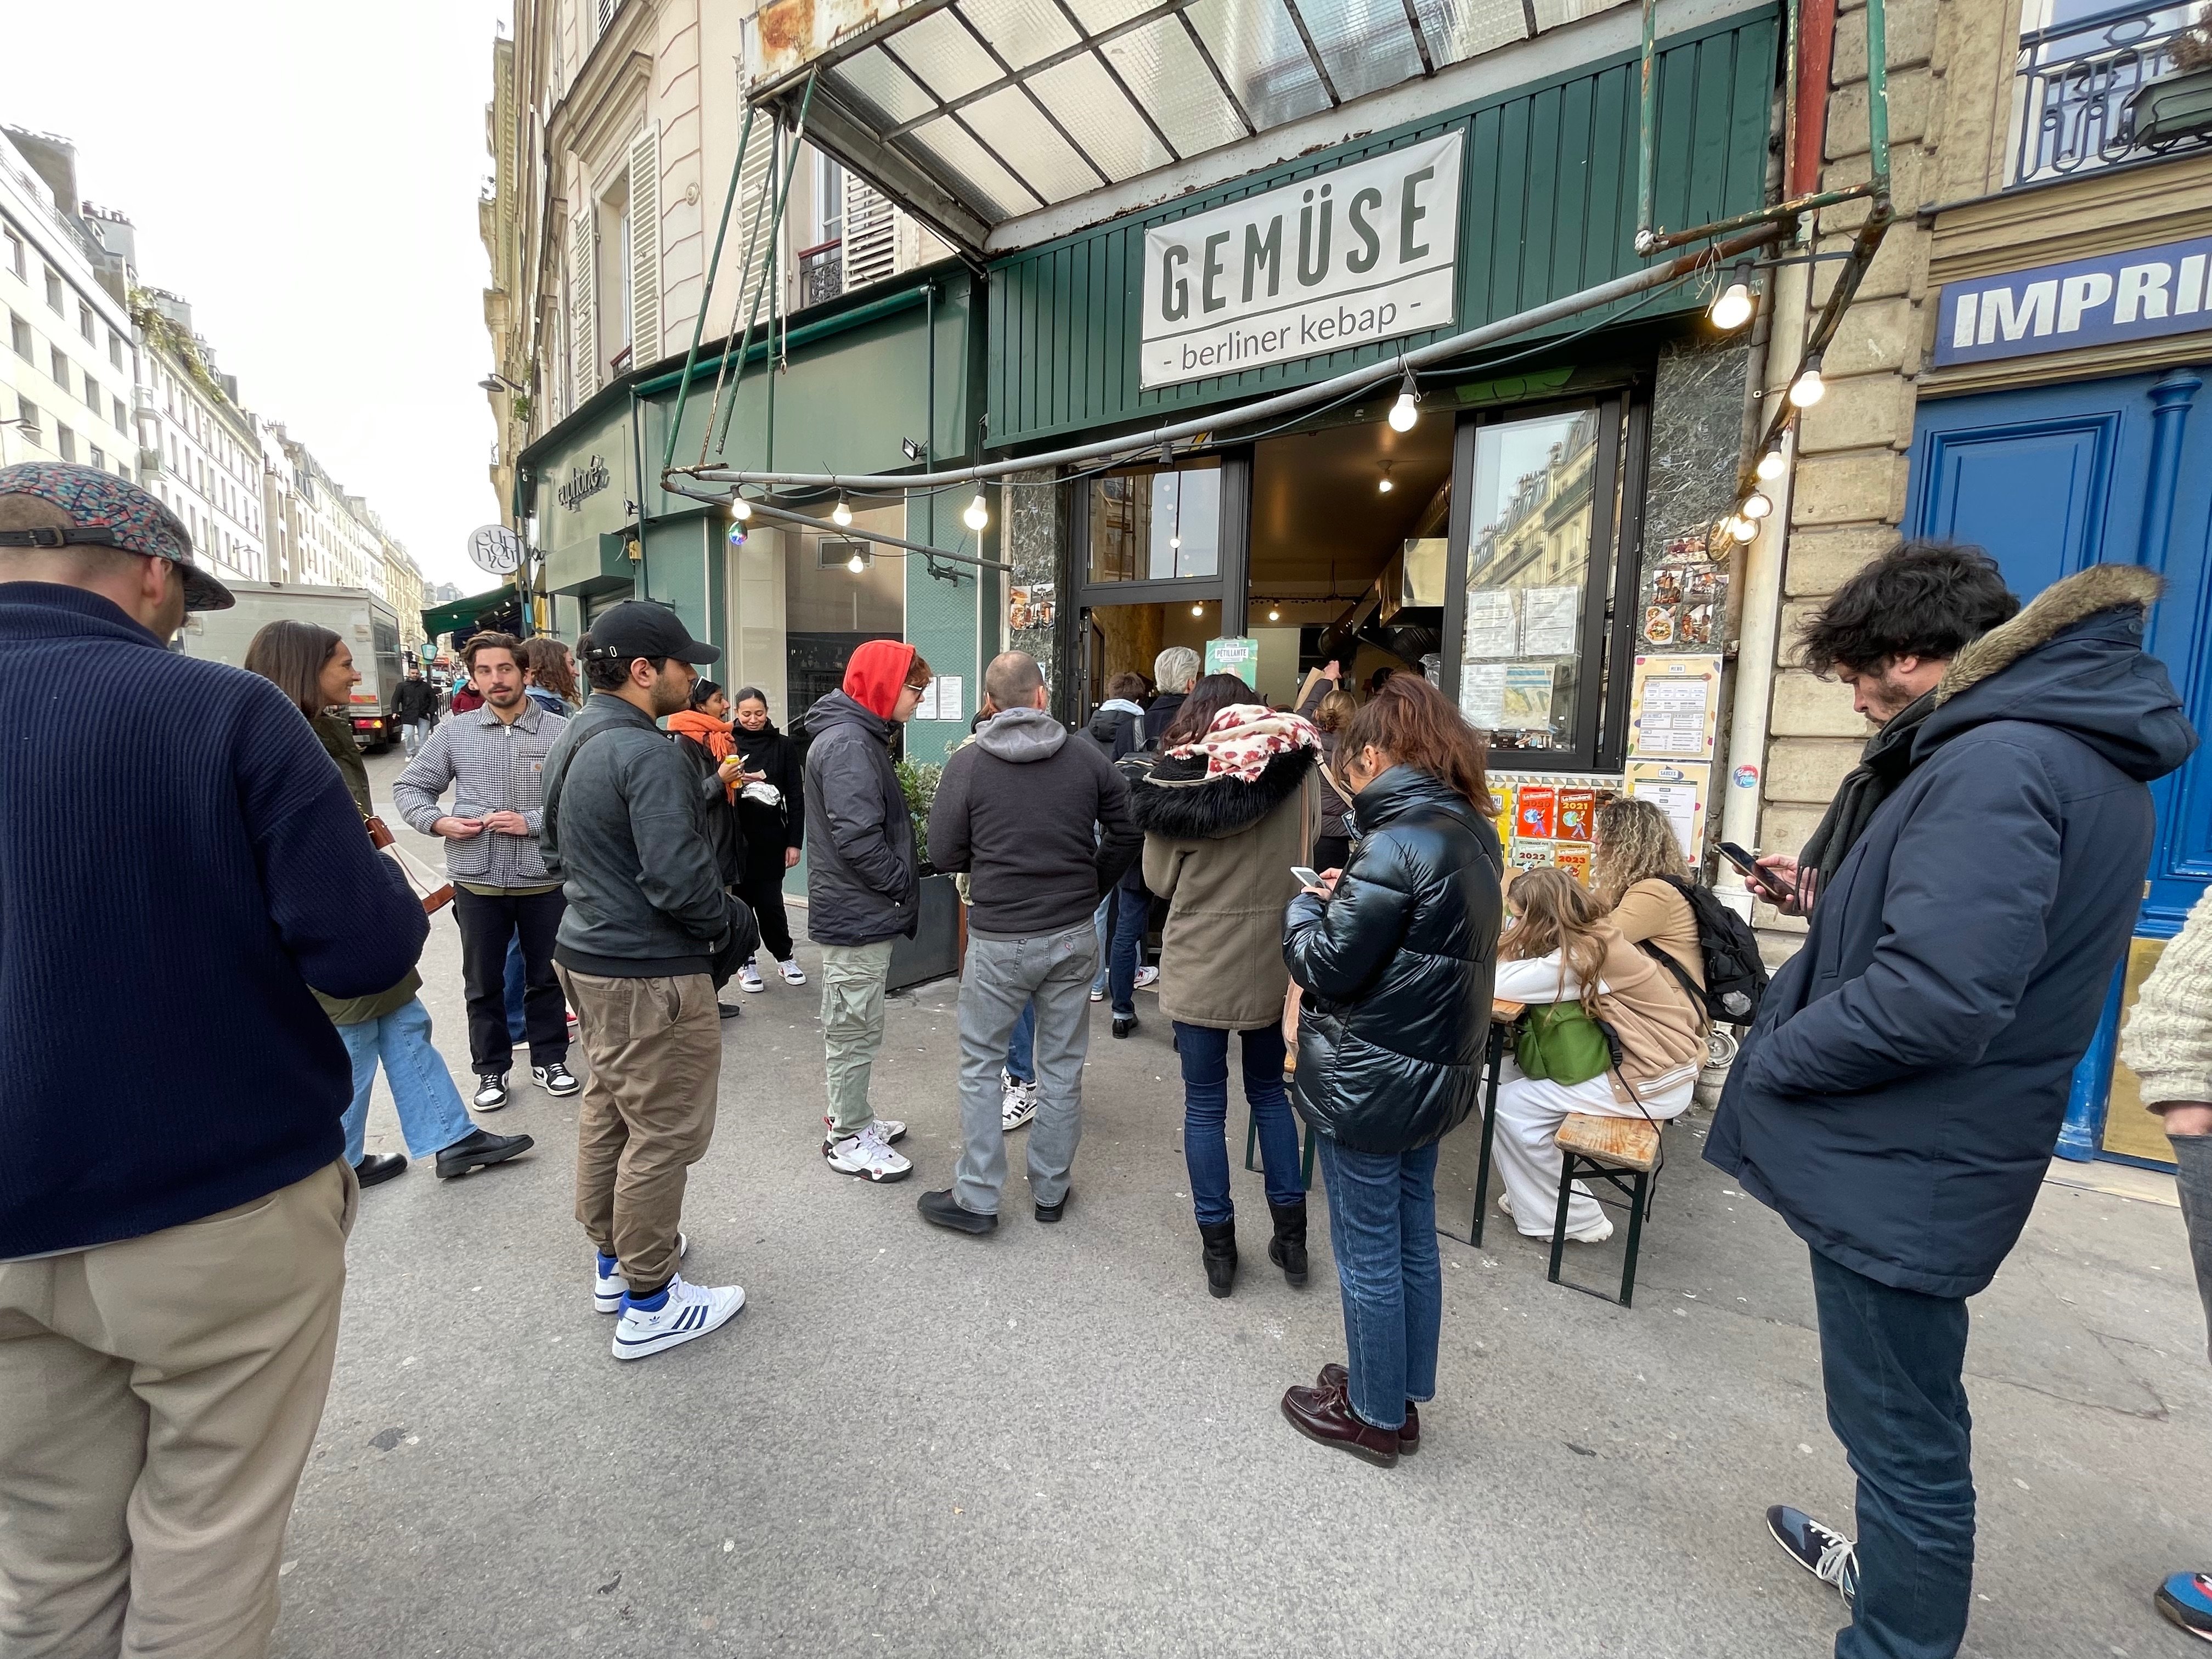 Gemüse cartonne avec ses kebabs berlinois. Depuis 2018, l’enseigne a contribué à dynamiser le commerce dans le bas de la rue Ramey. LP/Christine Henry